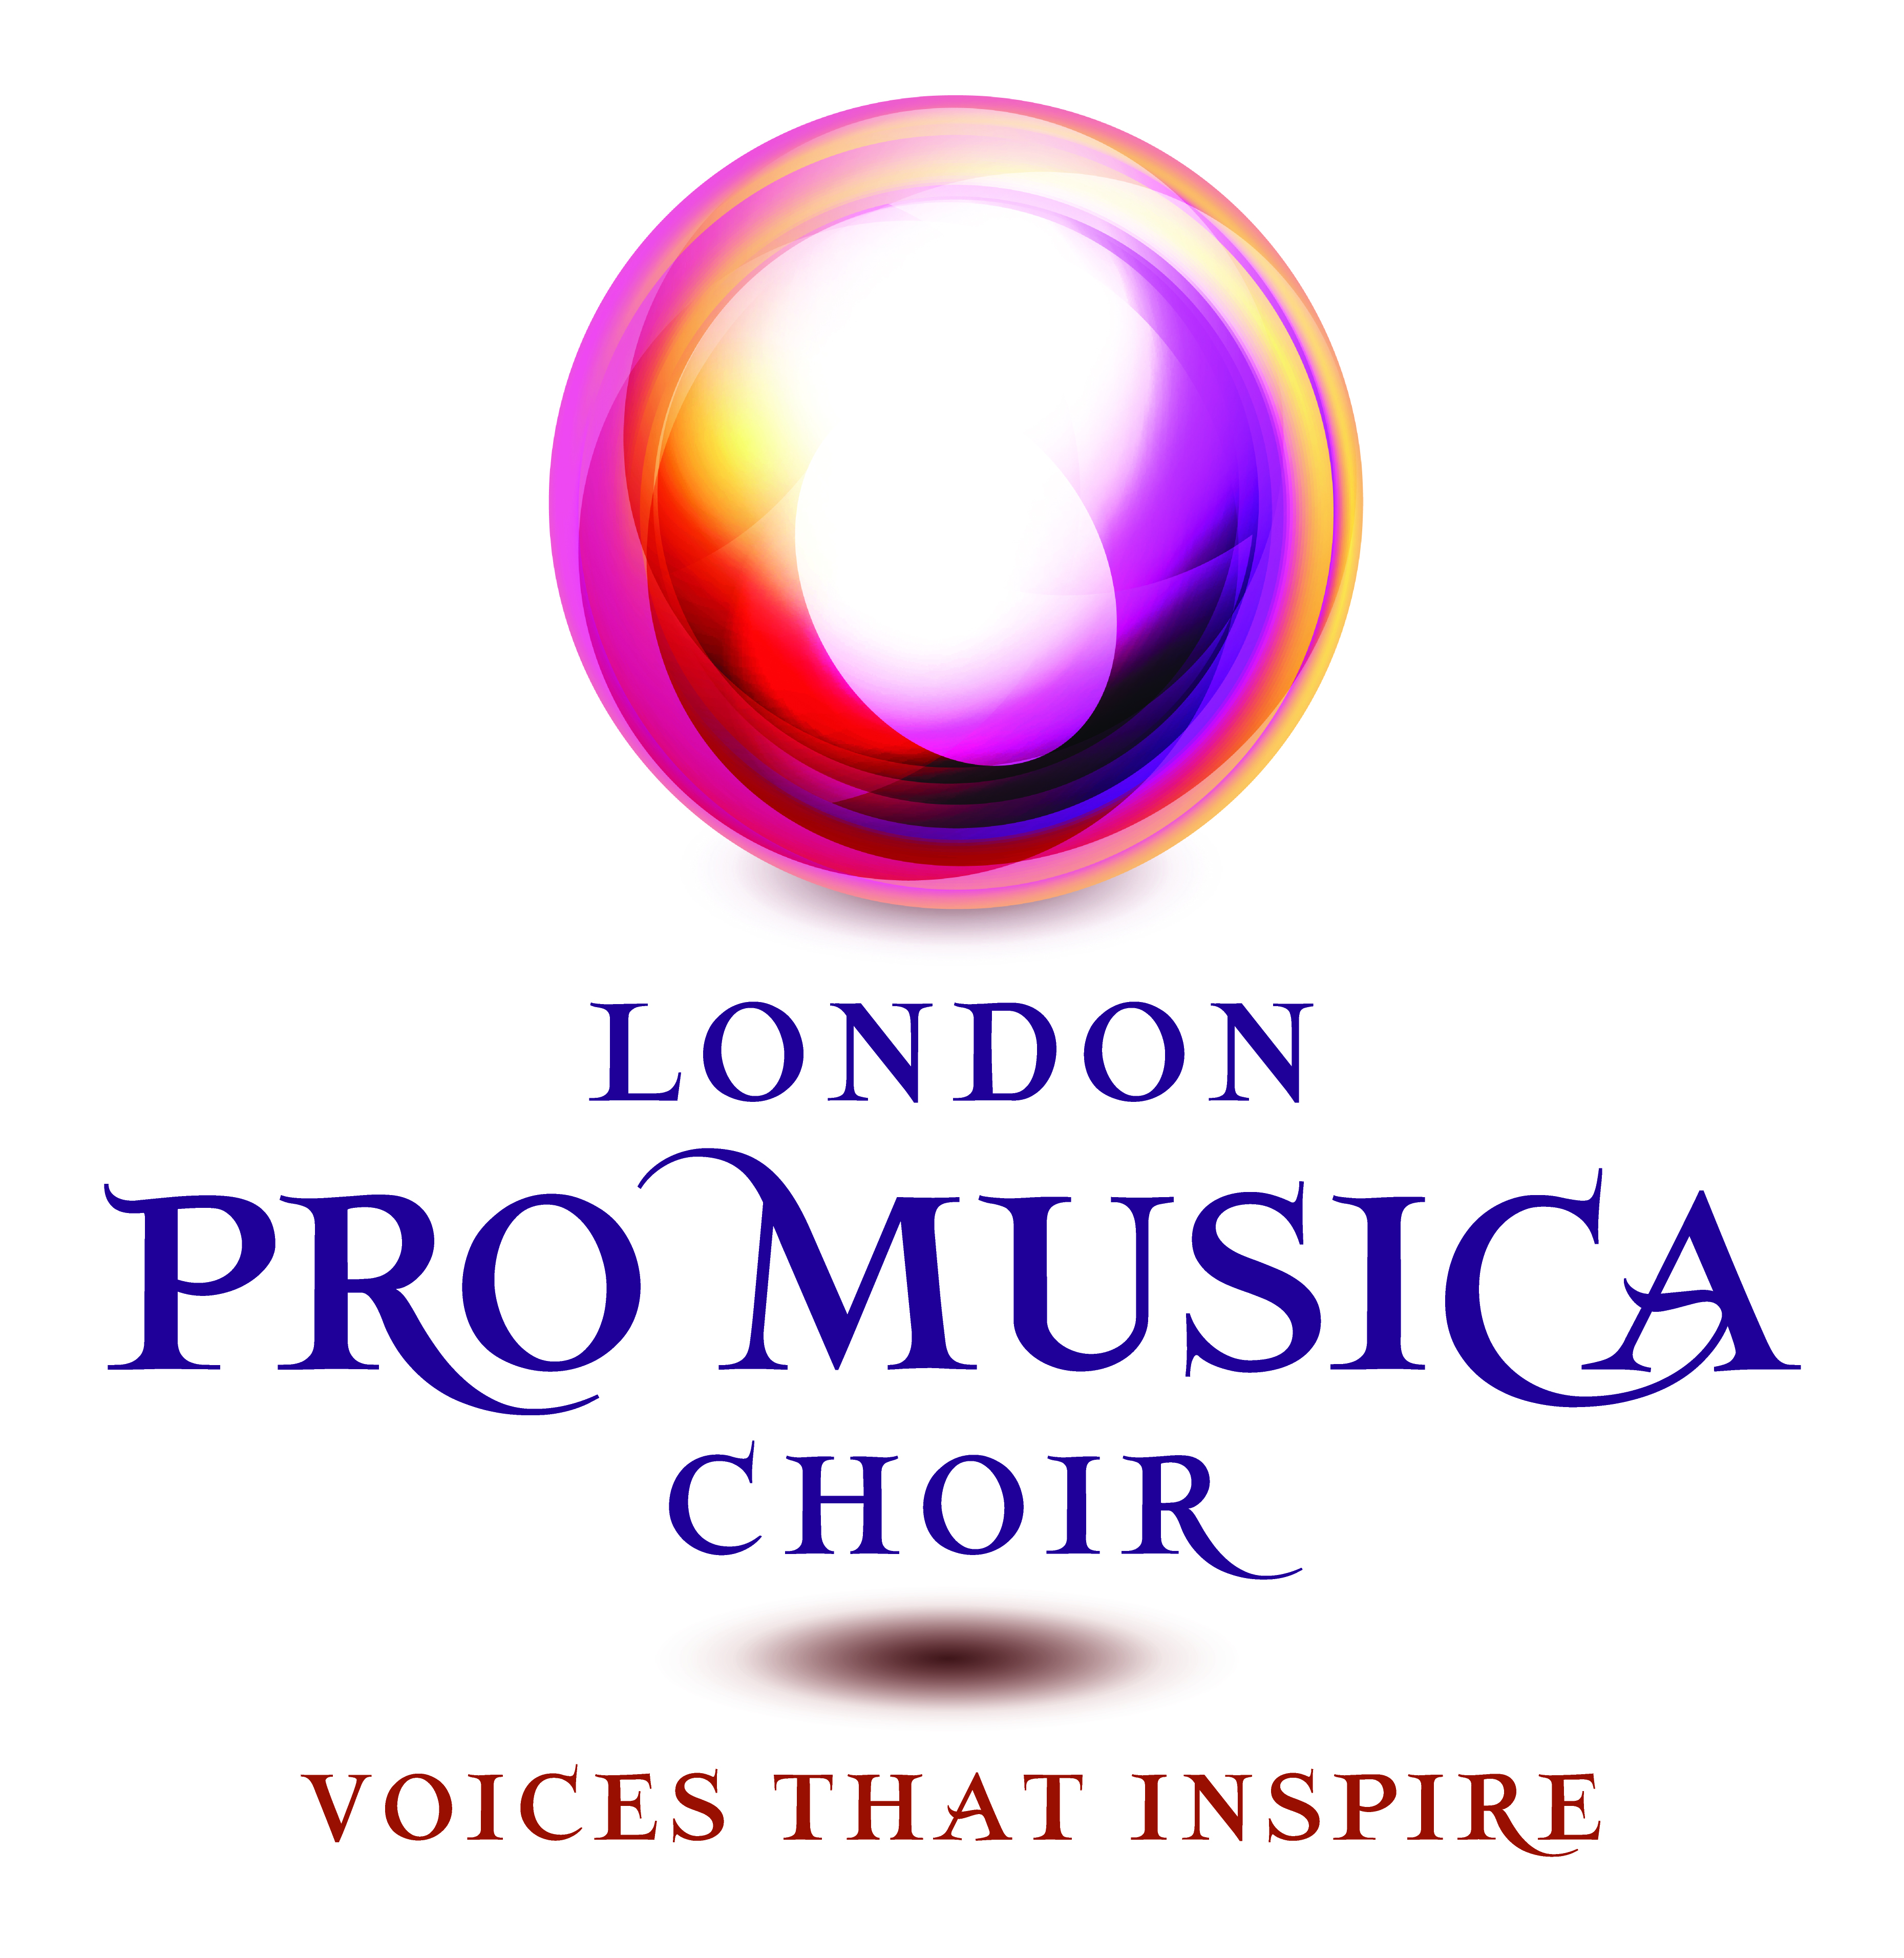 London Pro Musica Choir